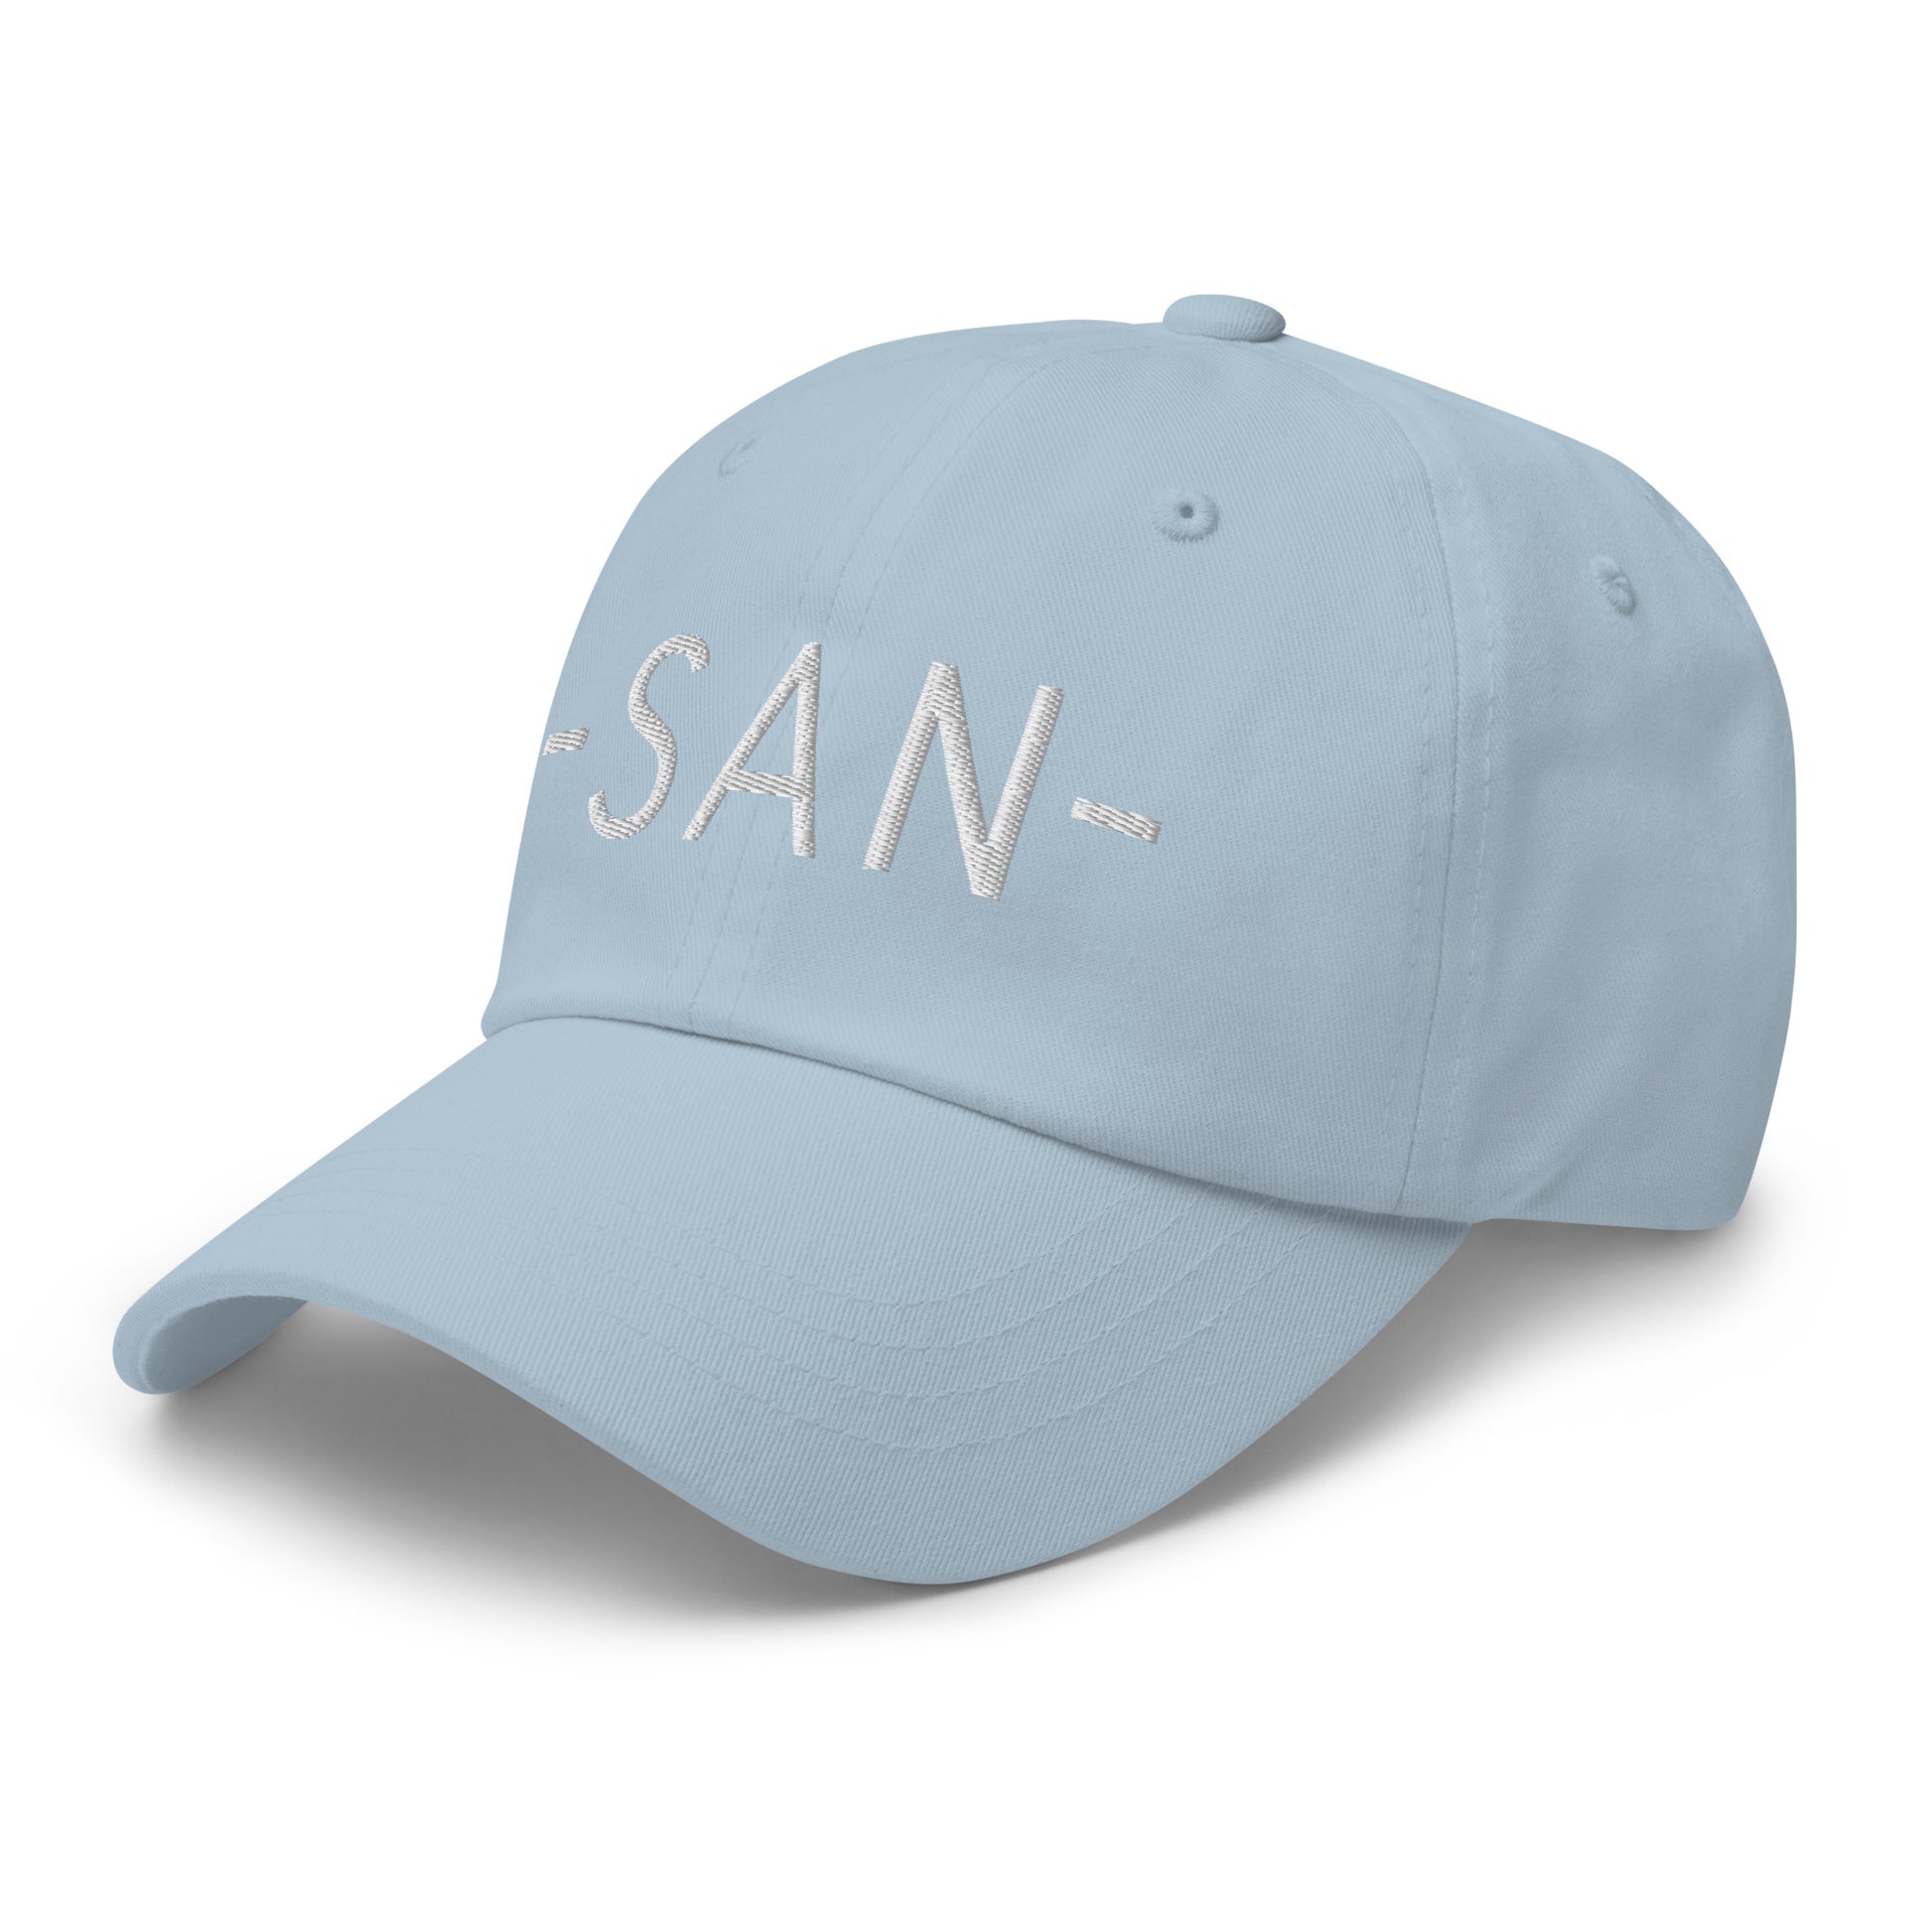 Souvenir Baseball Cap - White • SAN San Diego • YHM Designs - Image 28